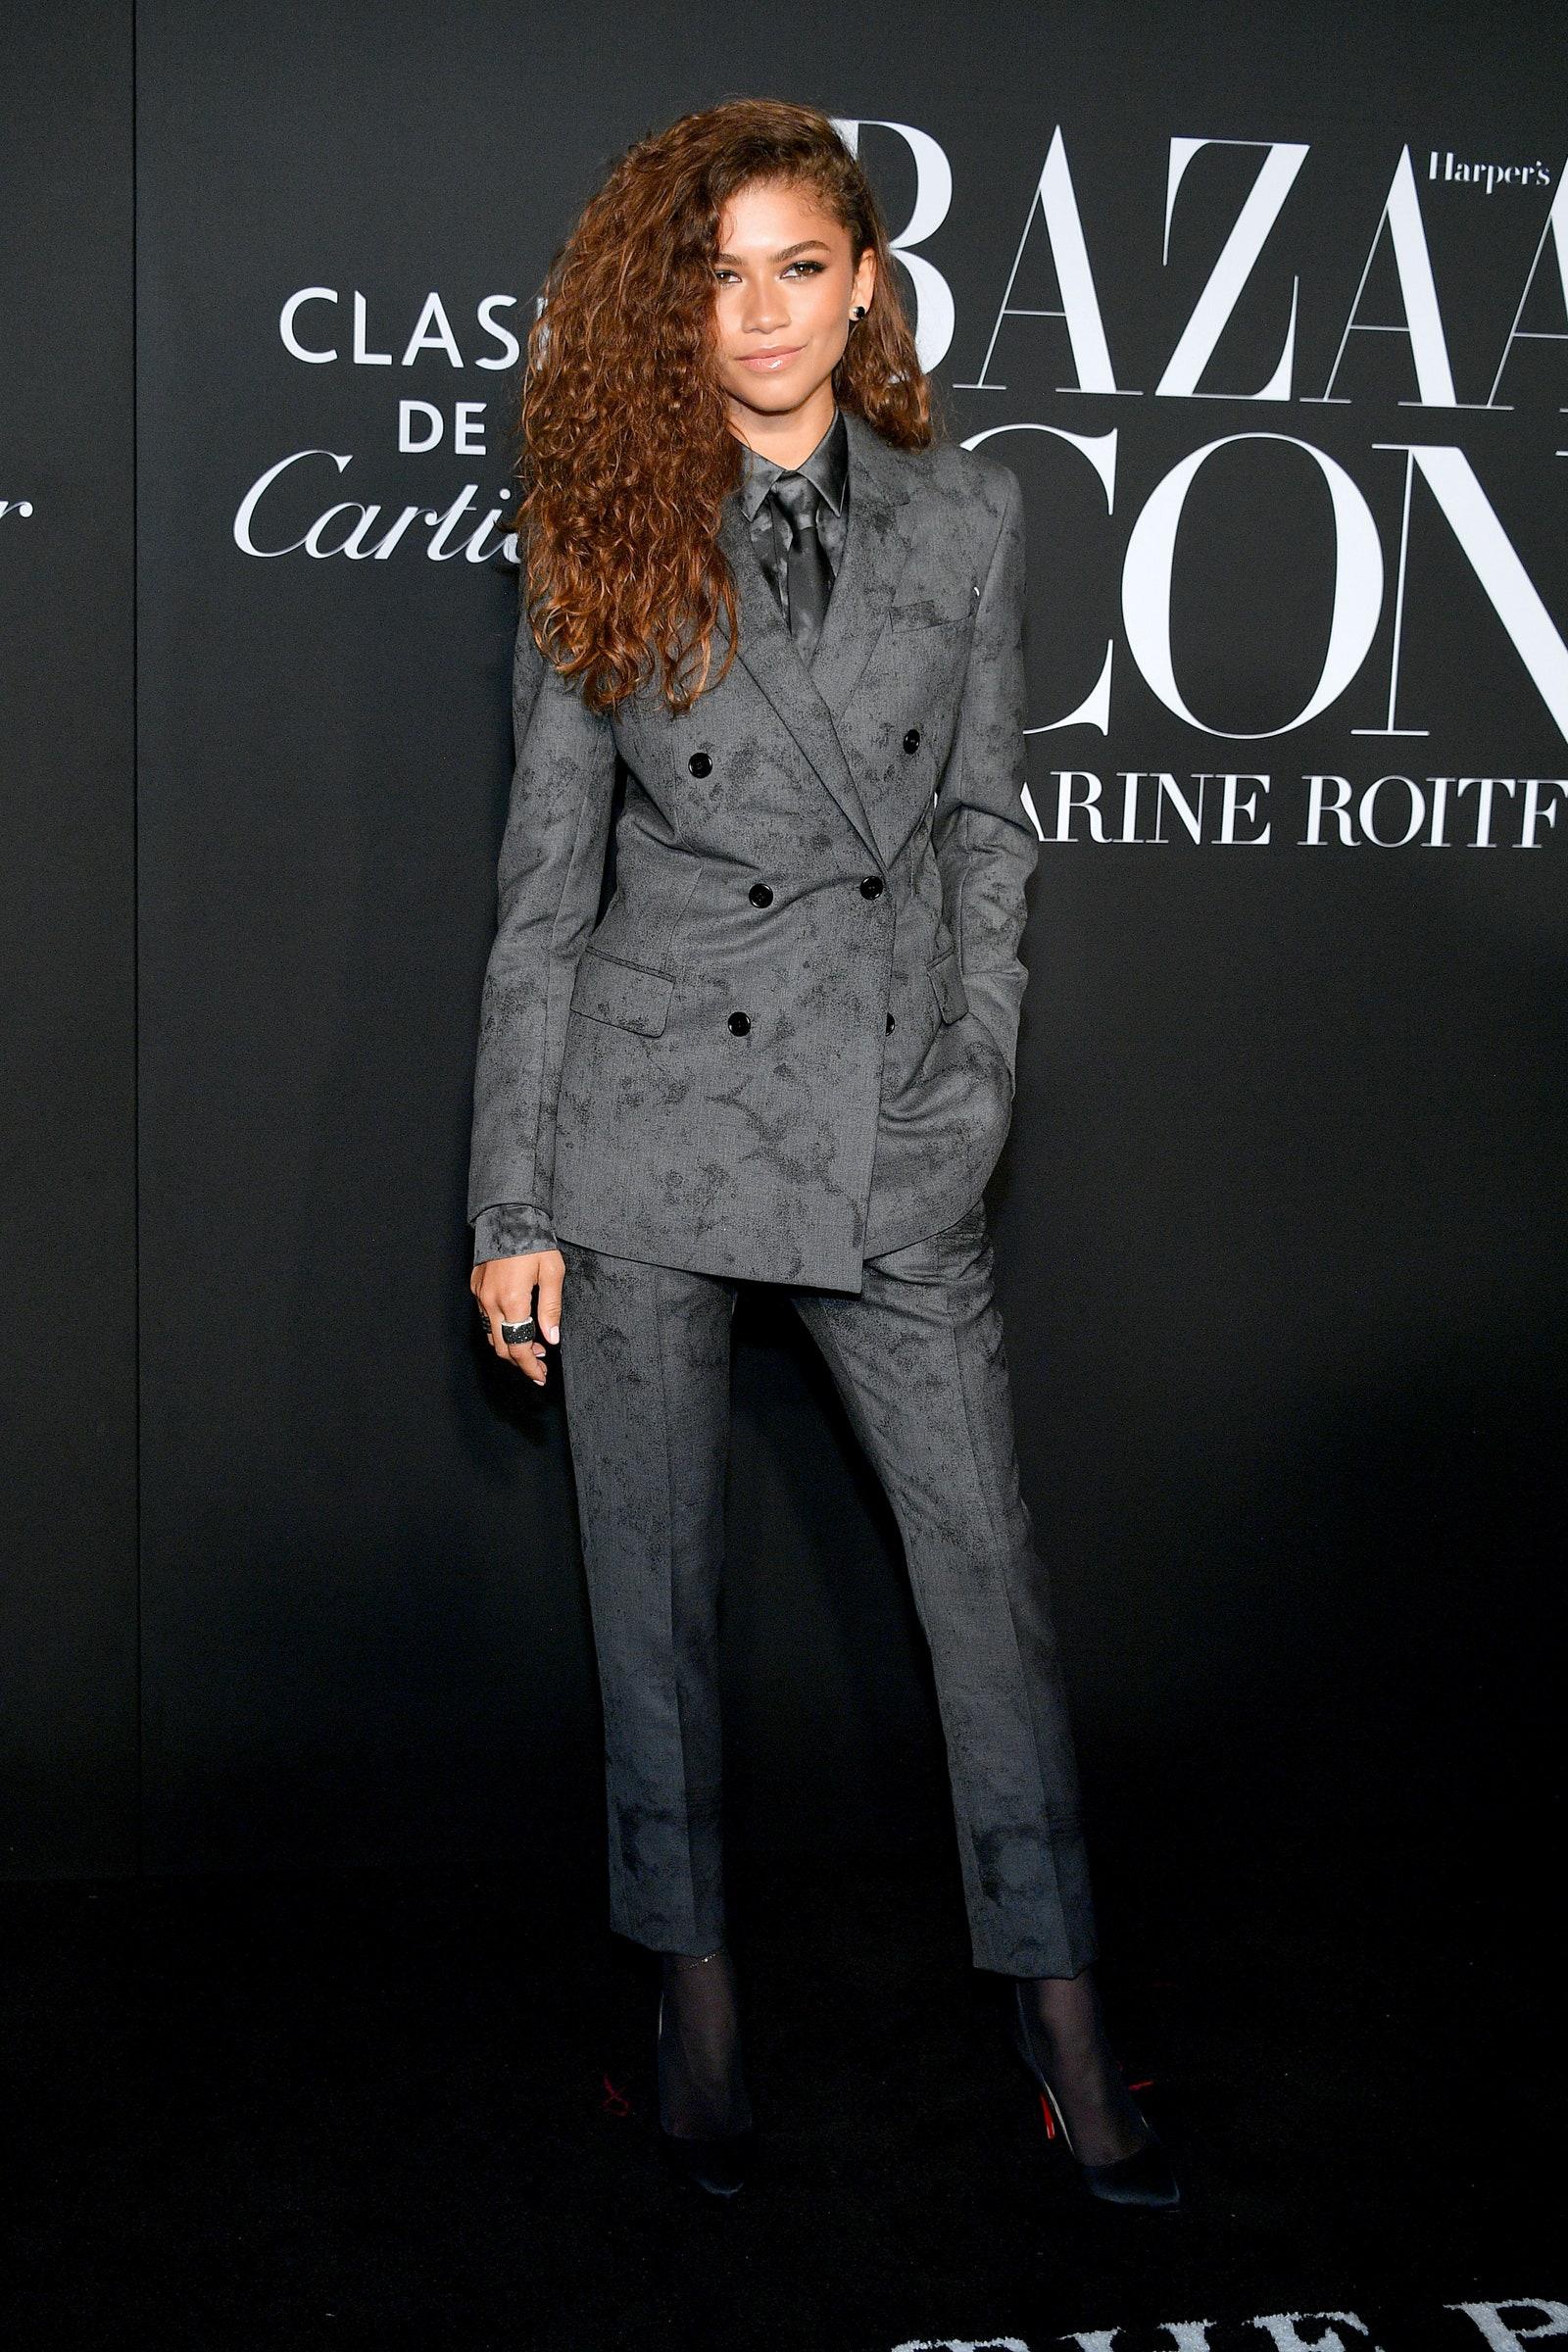 Tại sự kiện của Harper Bazaar trong Tuần lễ thời trang New York 2019, Zendaya mặc bộ suit xám kết hợp với mái tóc xoăn màu nâu sáng. Trông cô nàng vừa toát lên vẻ gai góc, cá tính nhưng vẫn giữ được nét quyến rũ đặc trưng,